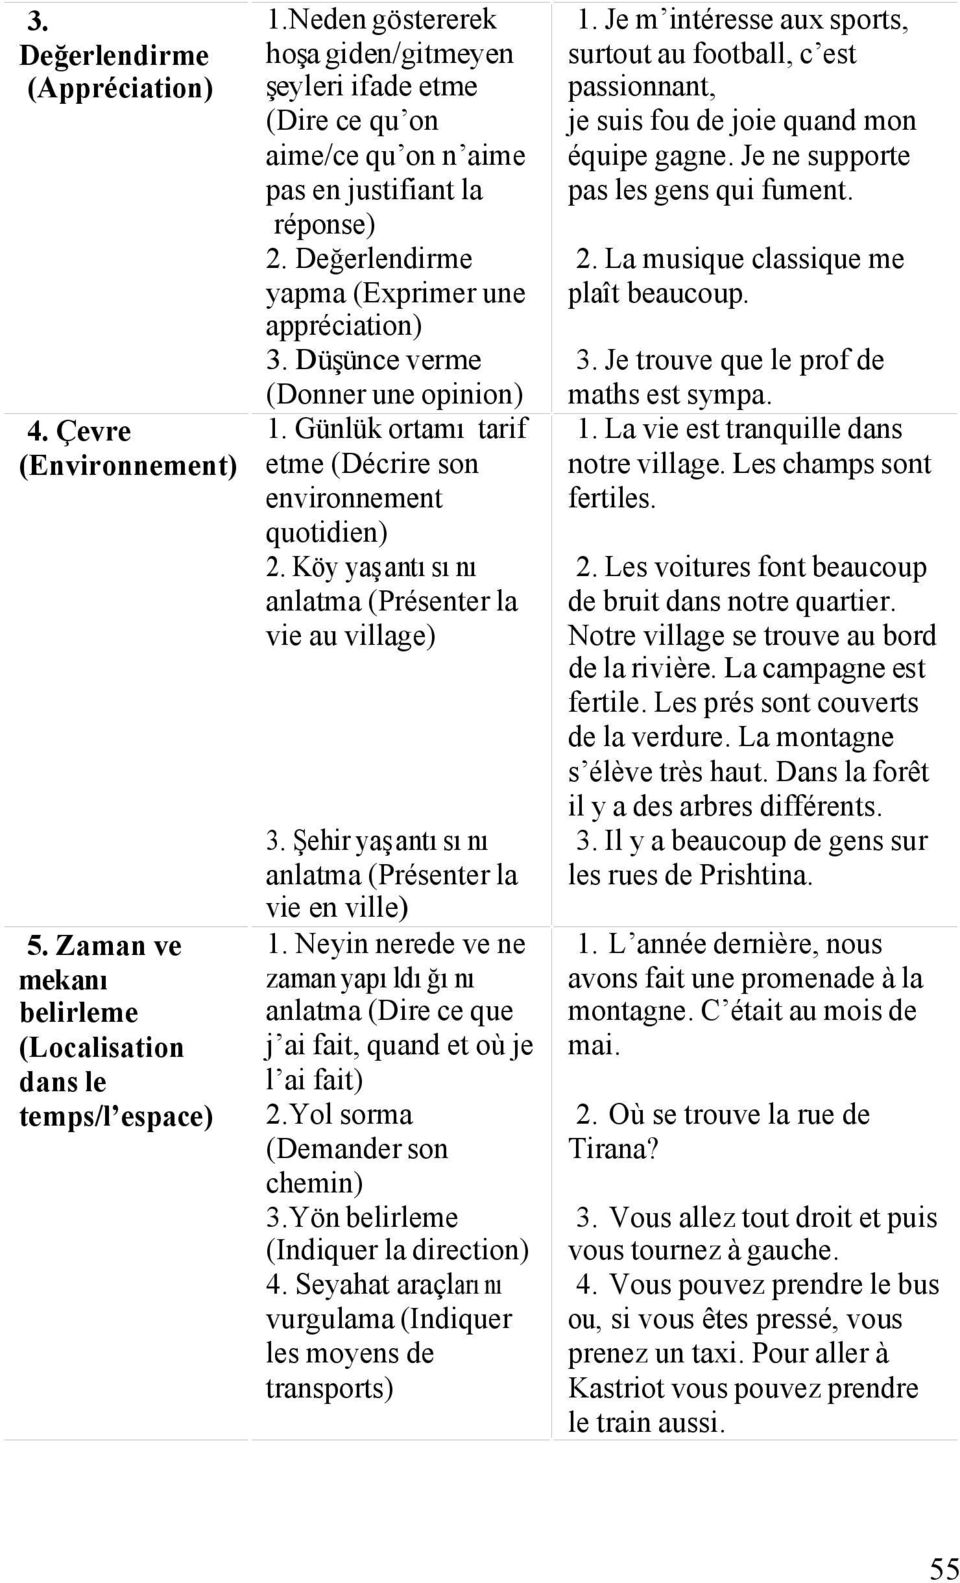 Düşünce verme (Donner une opinion) 1. Günlük ortamı tarif etme (Décrire son environnement quotidien) 2. Köy yaşantısını anlatma (Présenter la vie au village) 3.